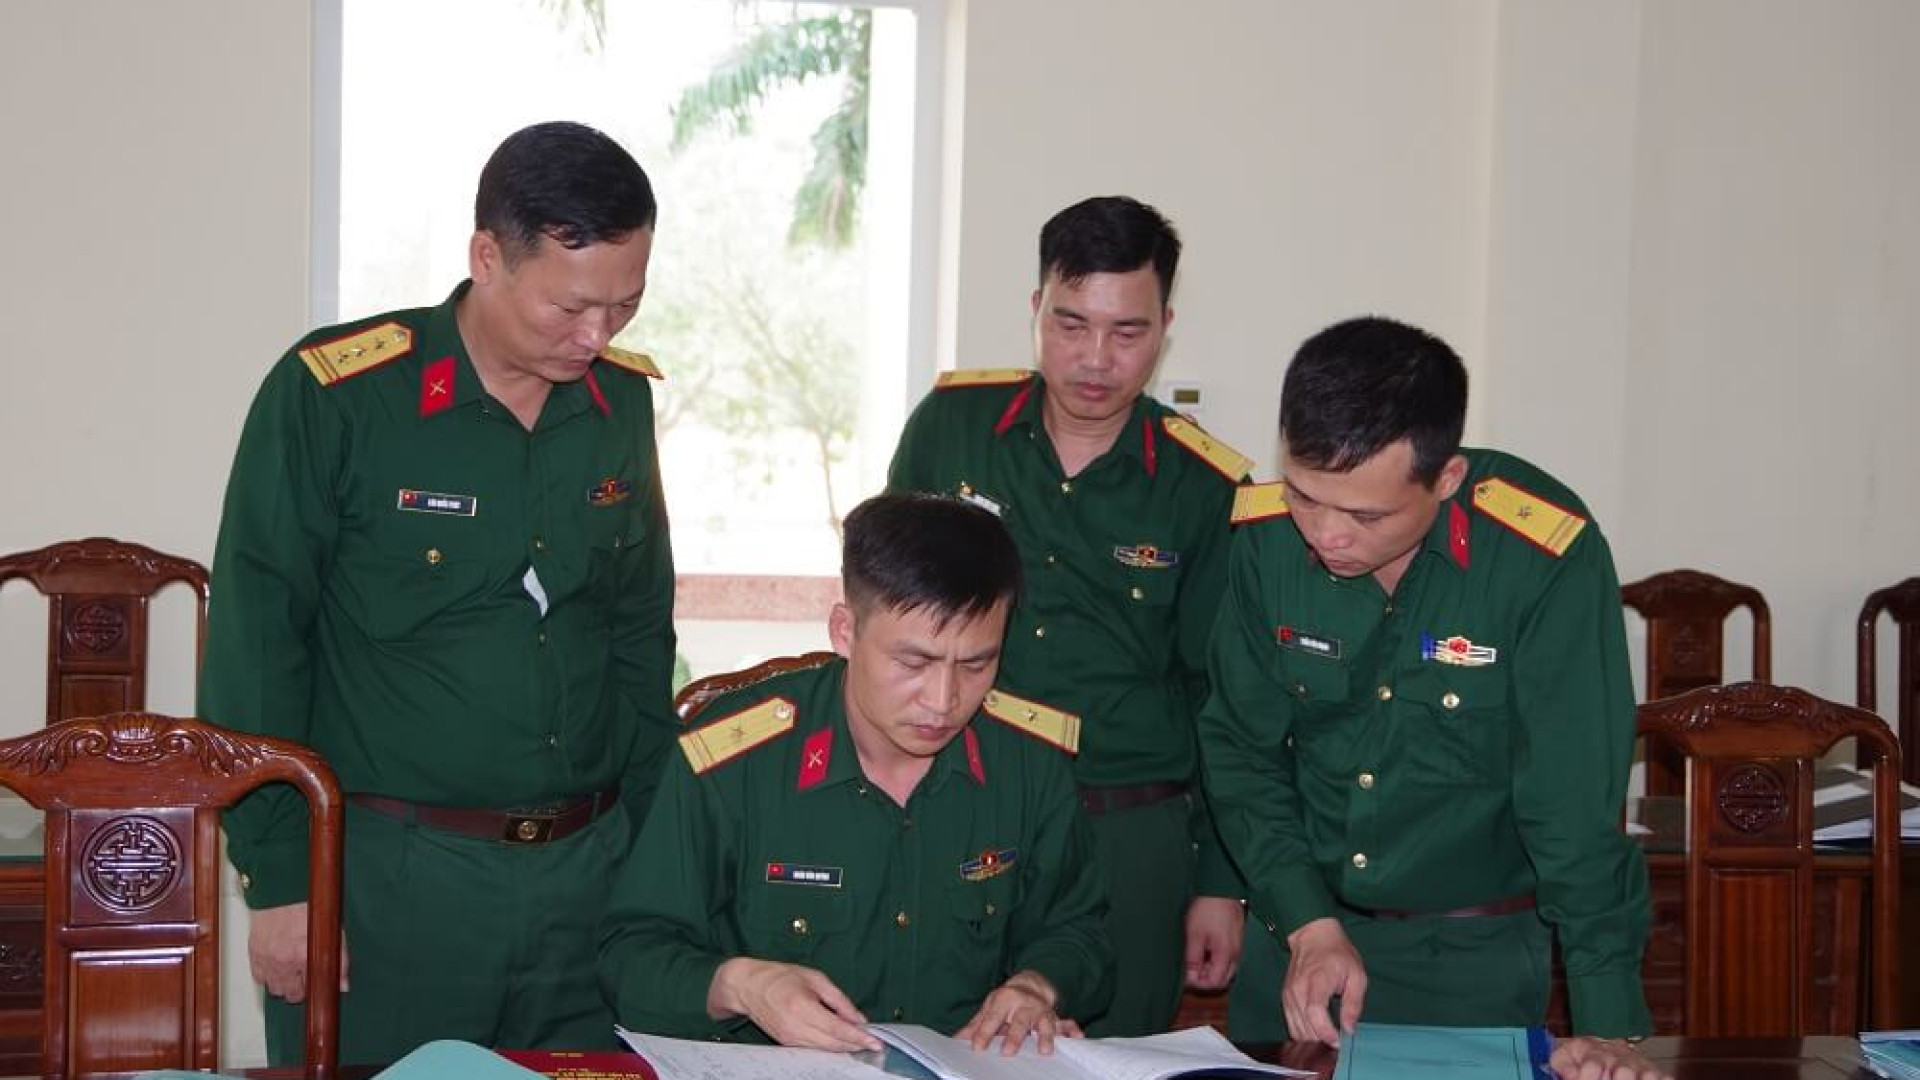 Bộ Tham mưu Quân khu kiểm tra các đơn vị mới sáp nhập, tổ chức lại tại Bộ CHQS tỉnh Nam Định